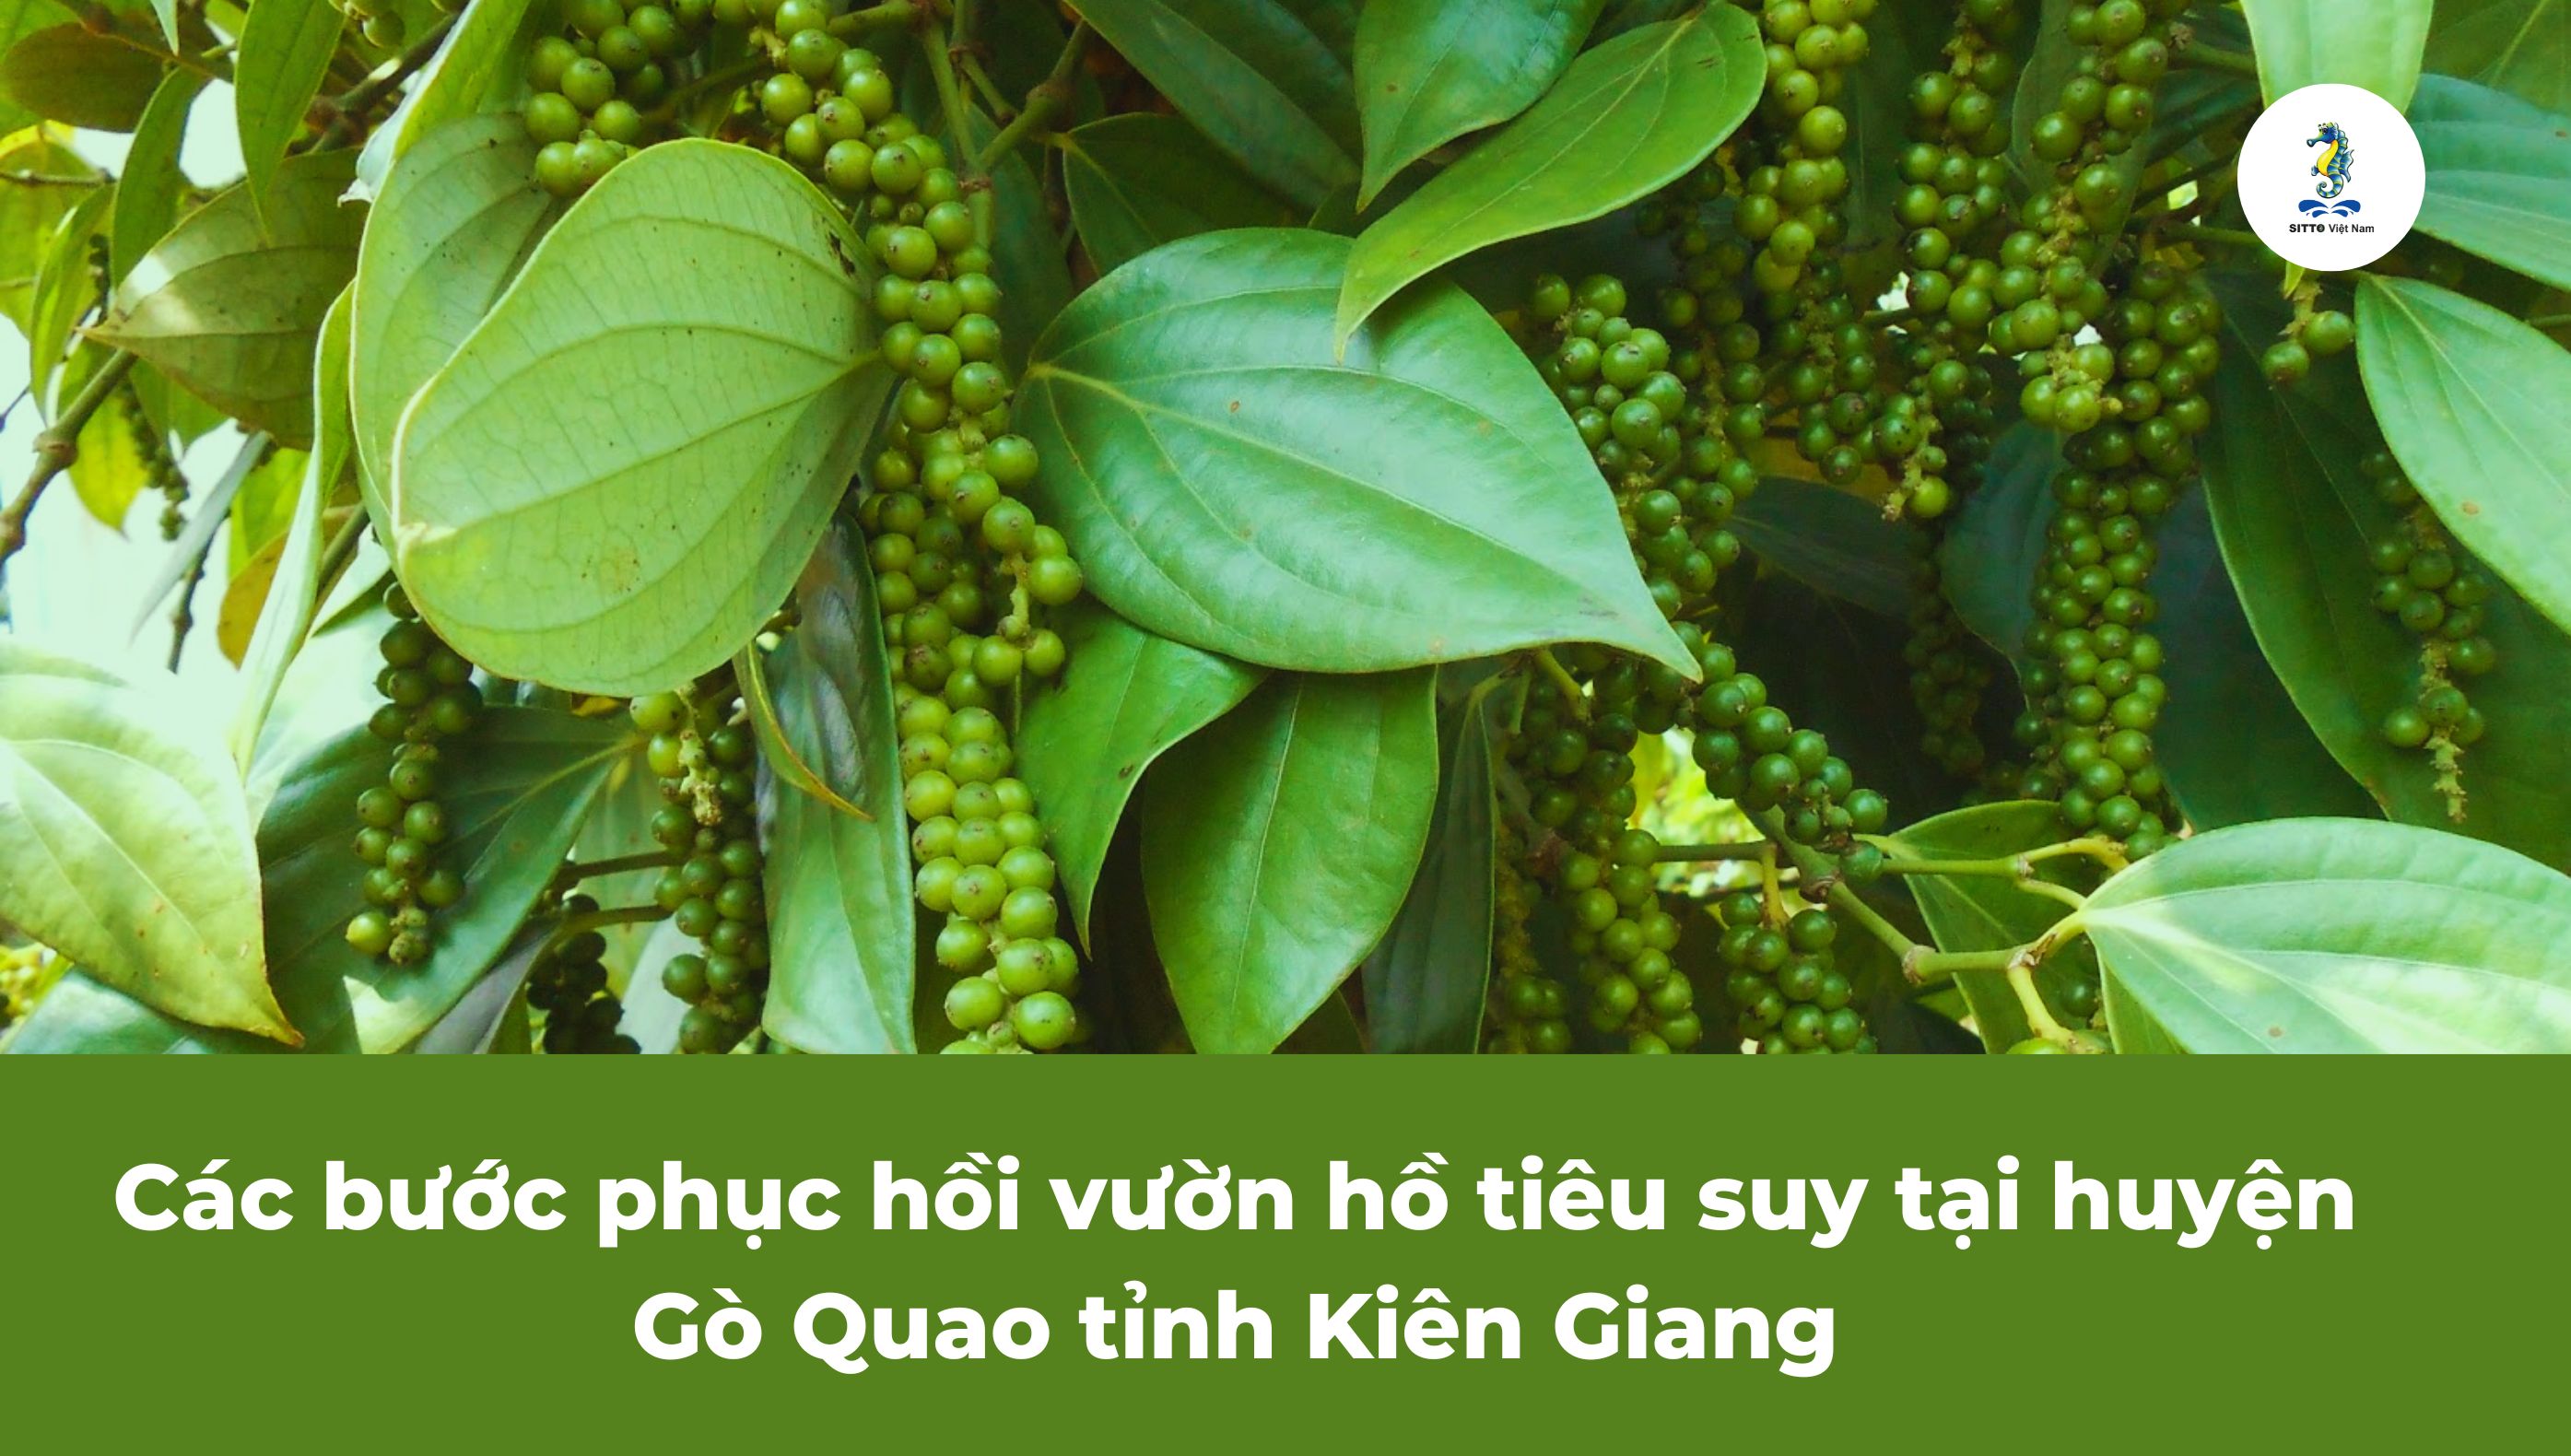 Các bước phục hồi vườn hồ tiêu suy tại huyện Gò Quao tỉnh Kiên Giang